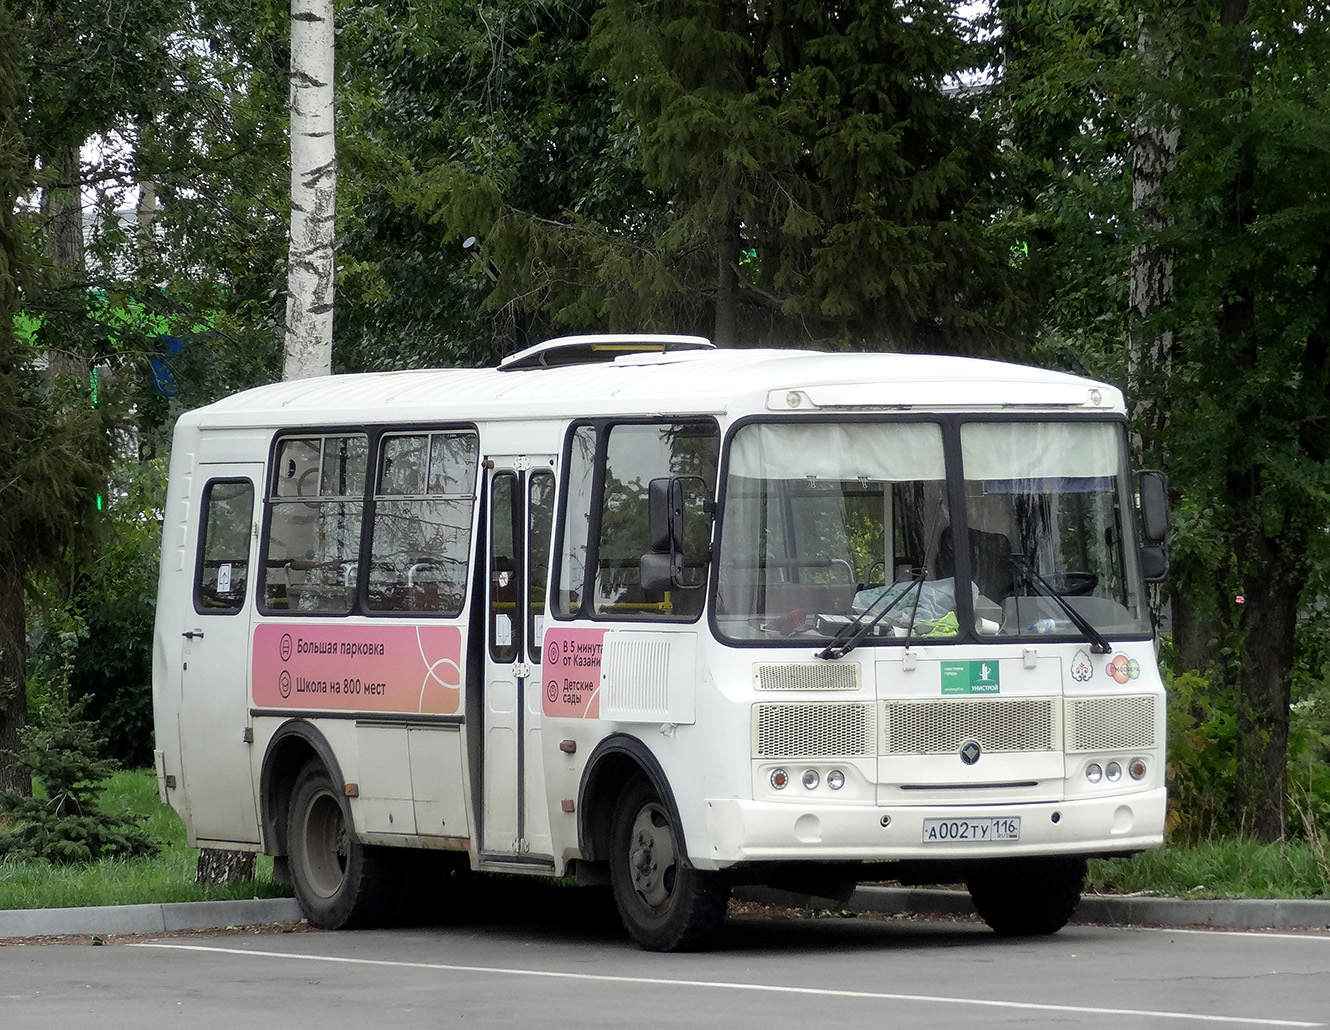 Татарстан, ПАЗ-32053 № А 002 ТУ 116